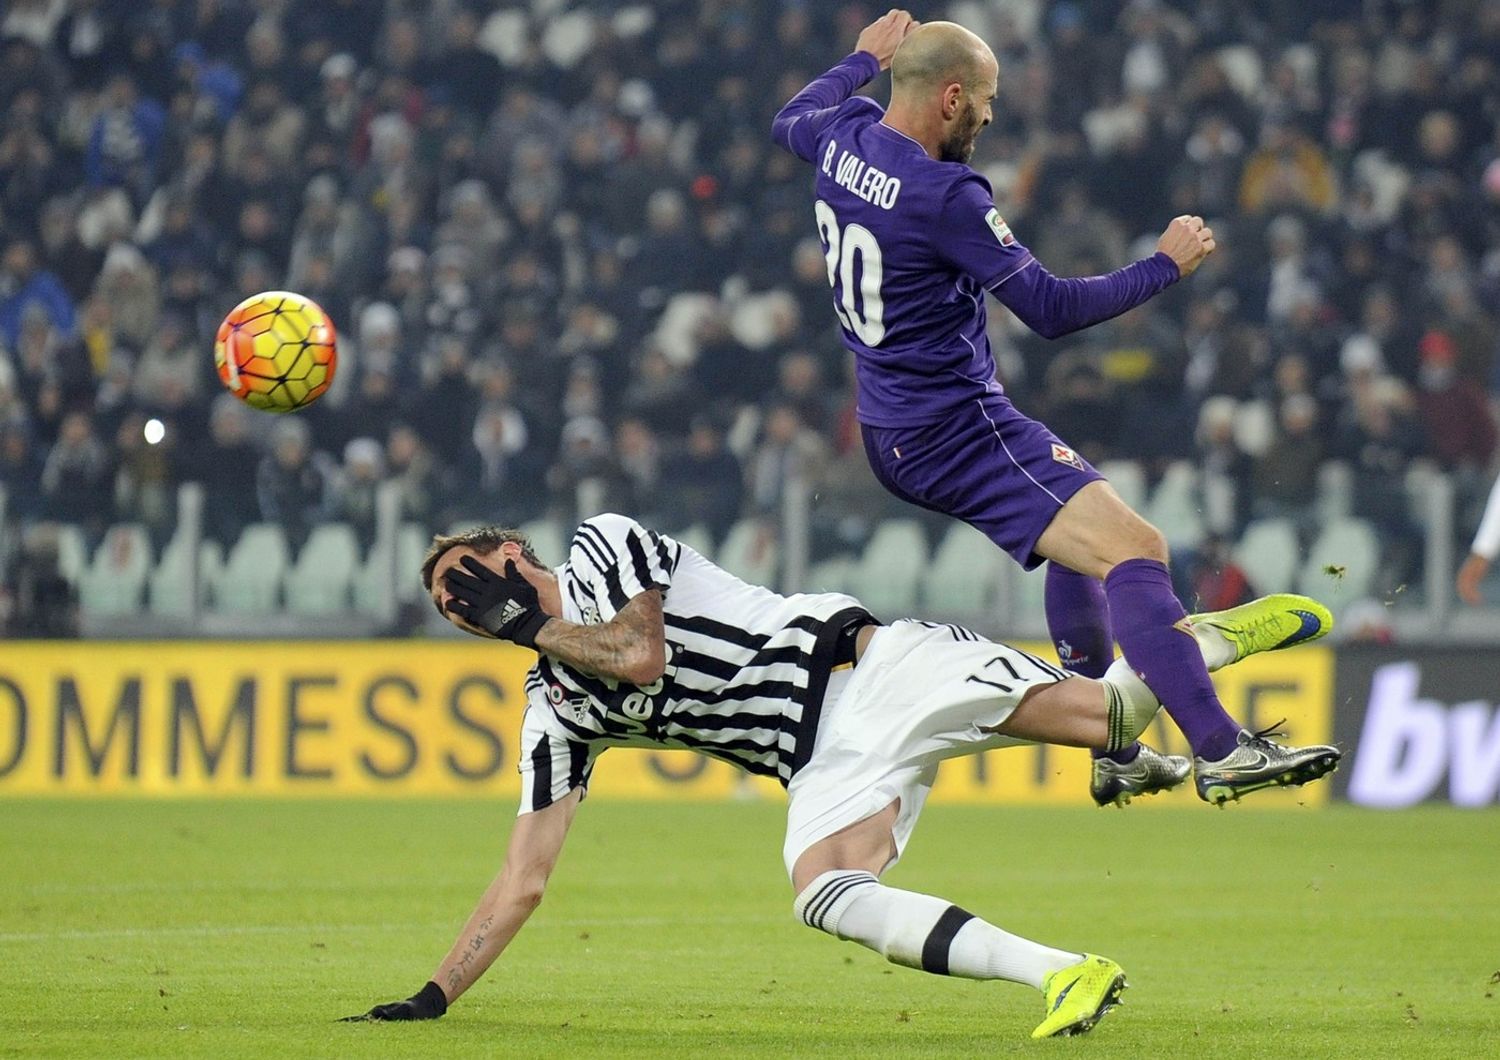 Mario Mandzukic e Borja Valero - Juventus-Fiorentina - 13 dicembre 2015&nbsp;